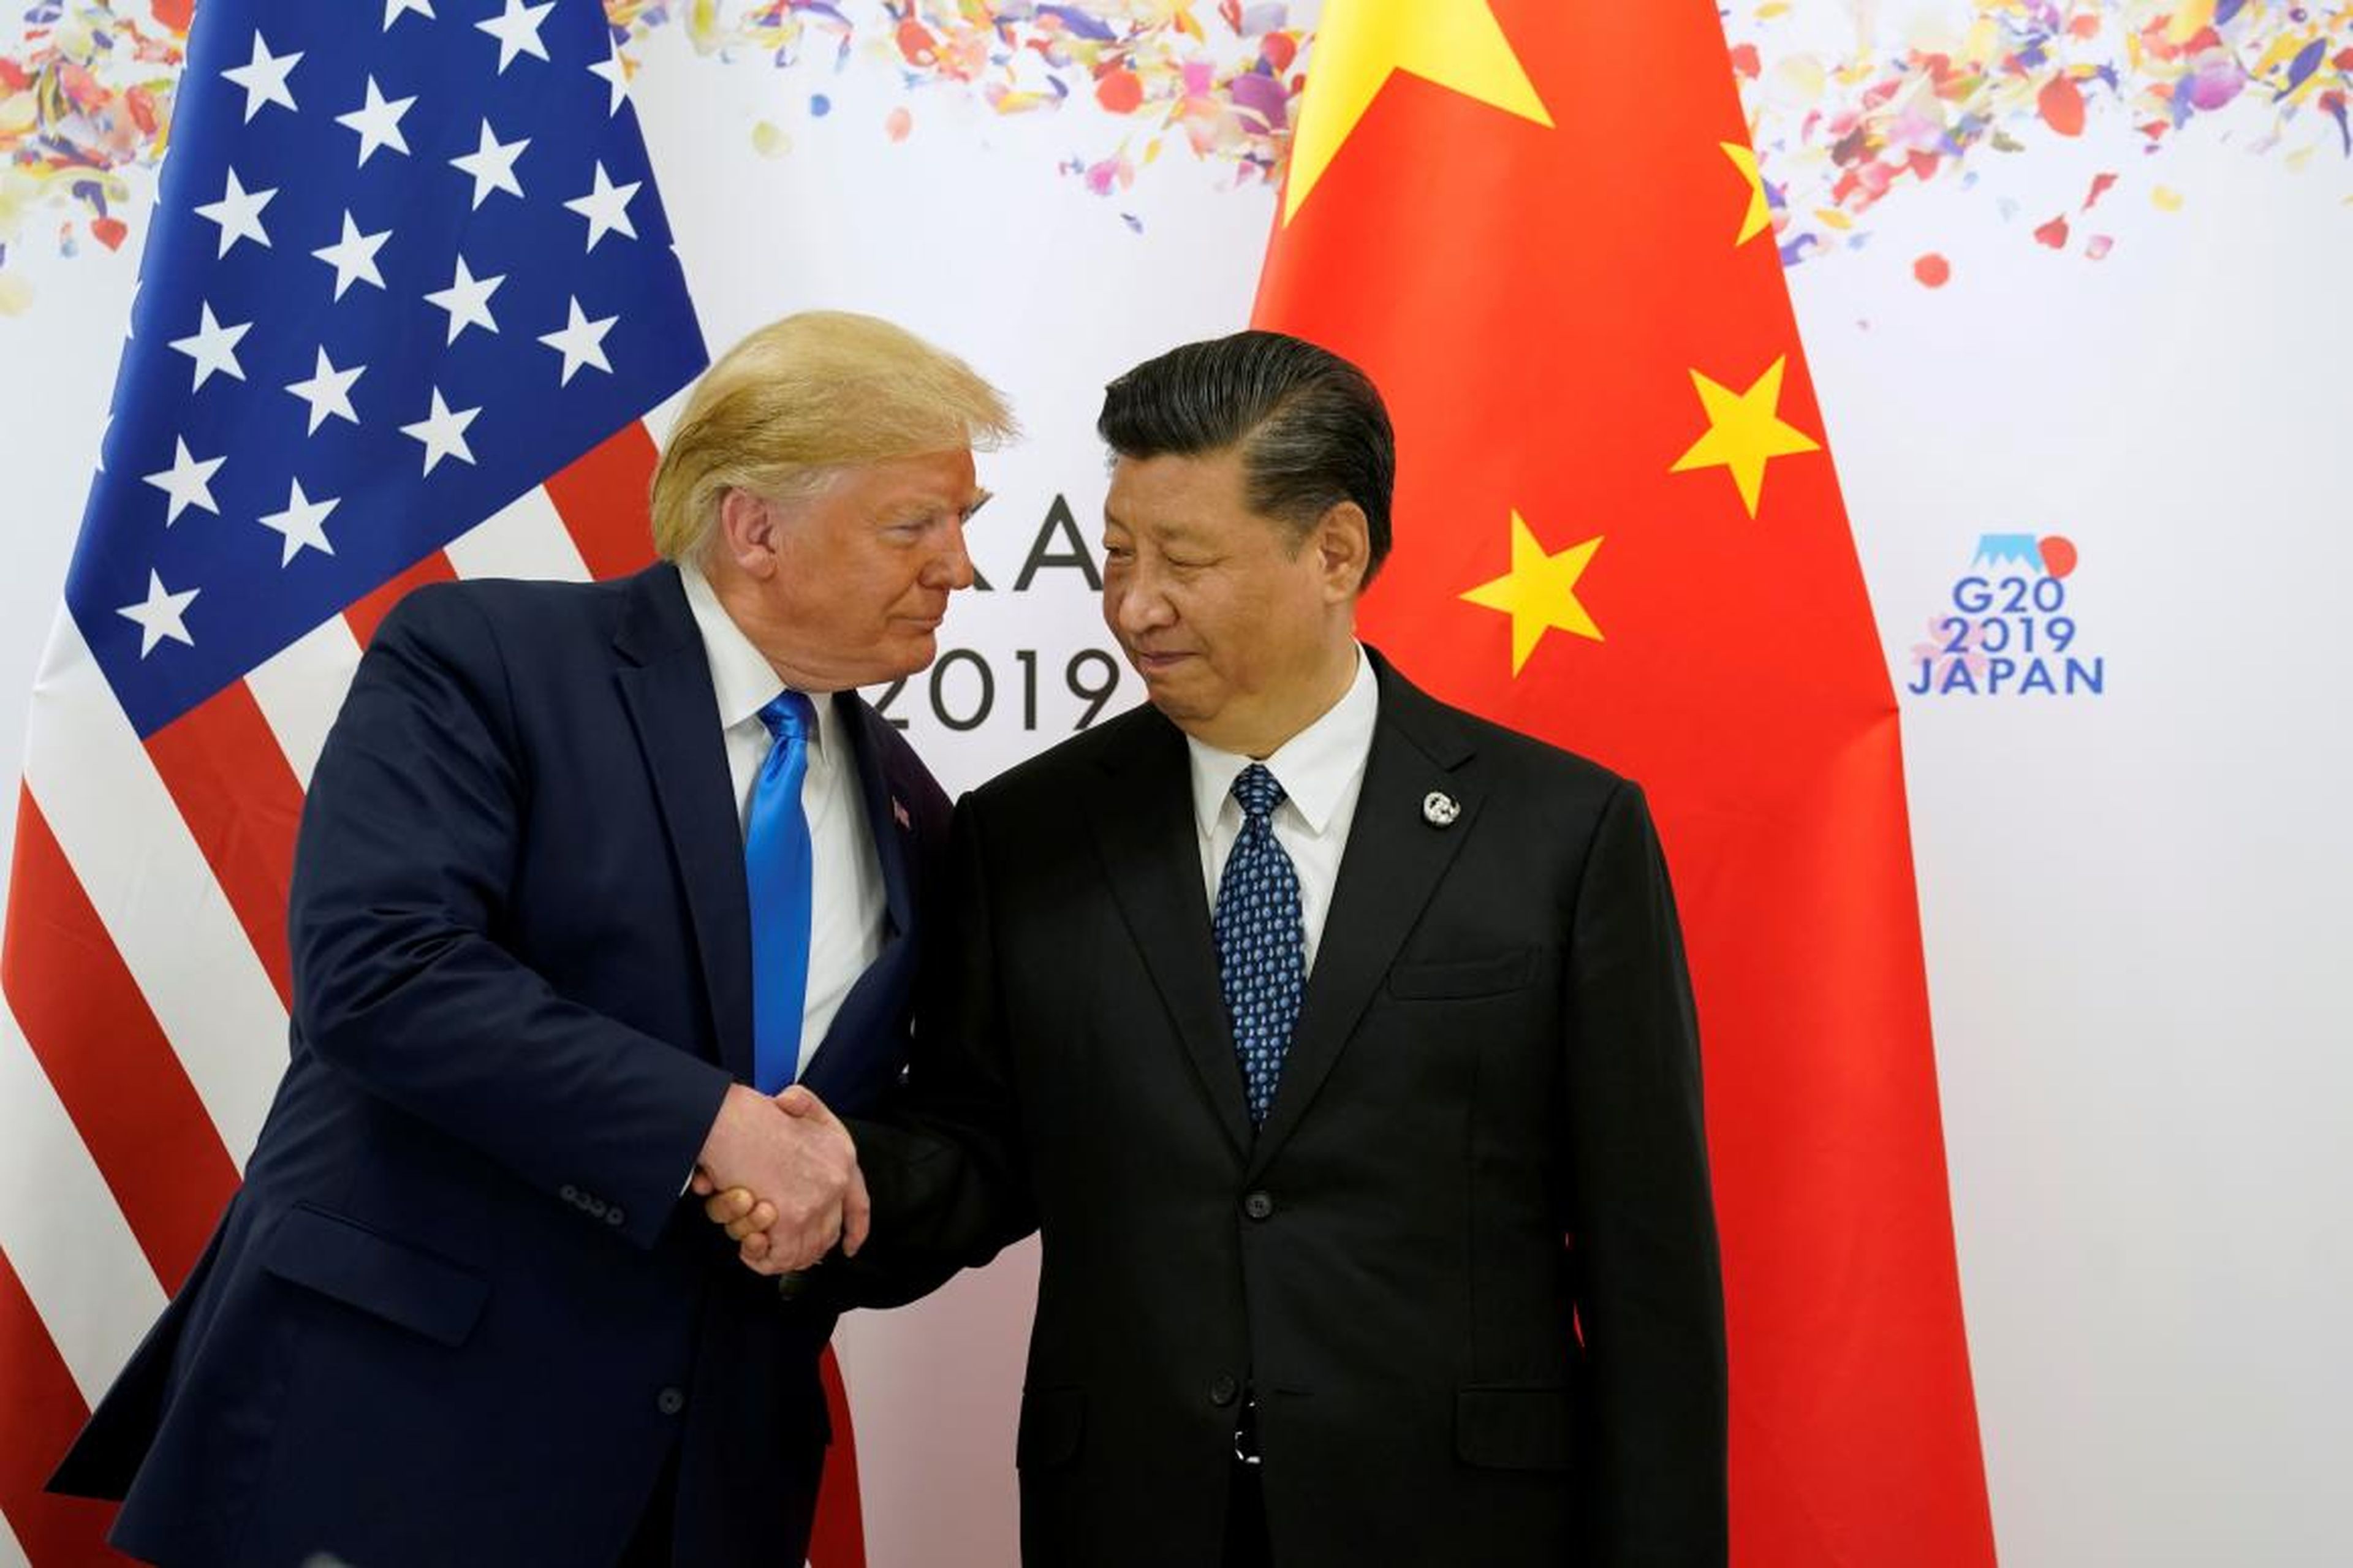 El presidente de Estados Unidos Donald Trump saluda al presidente chino Xi Jinping, antes del inicio de su encuentro durante la reunión G20, celebrada hoy en Osaka, Japon.